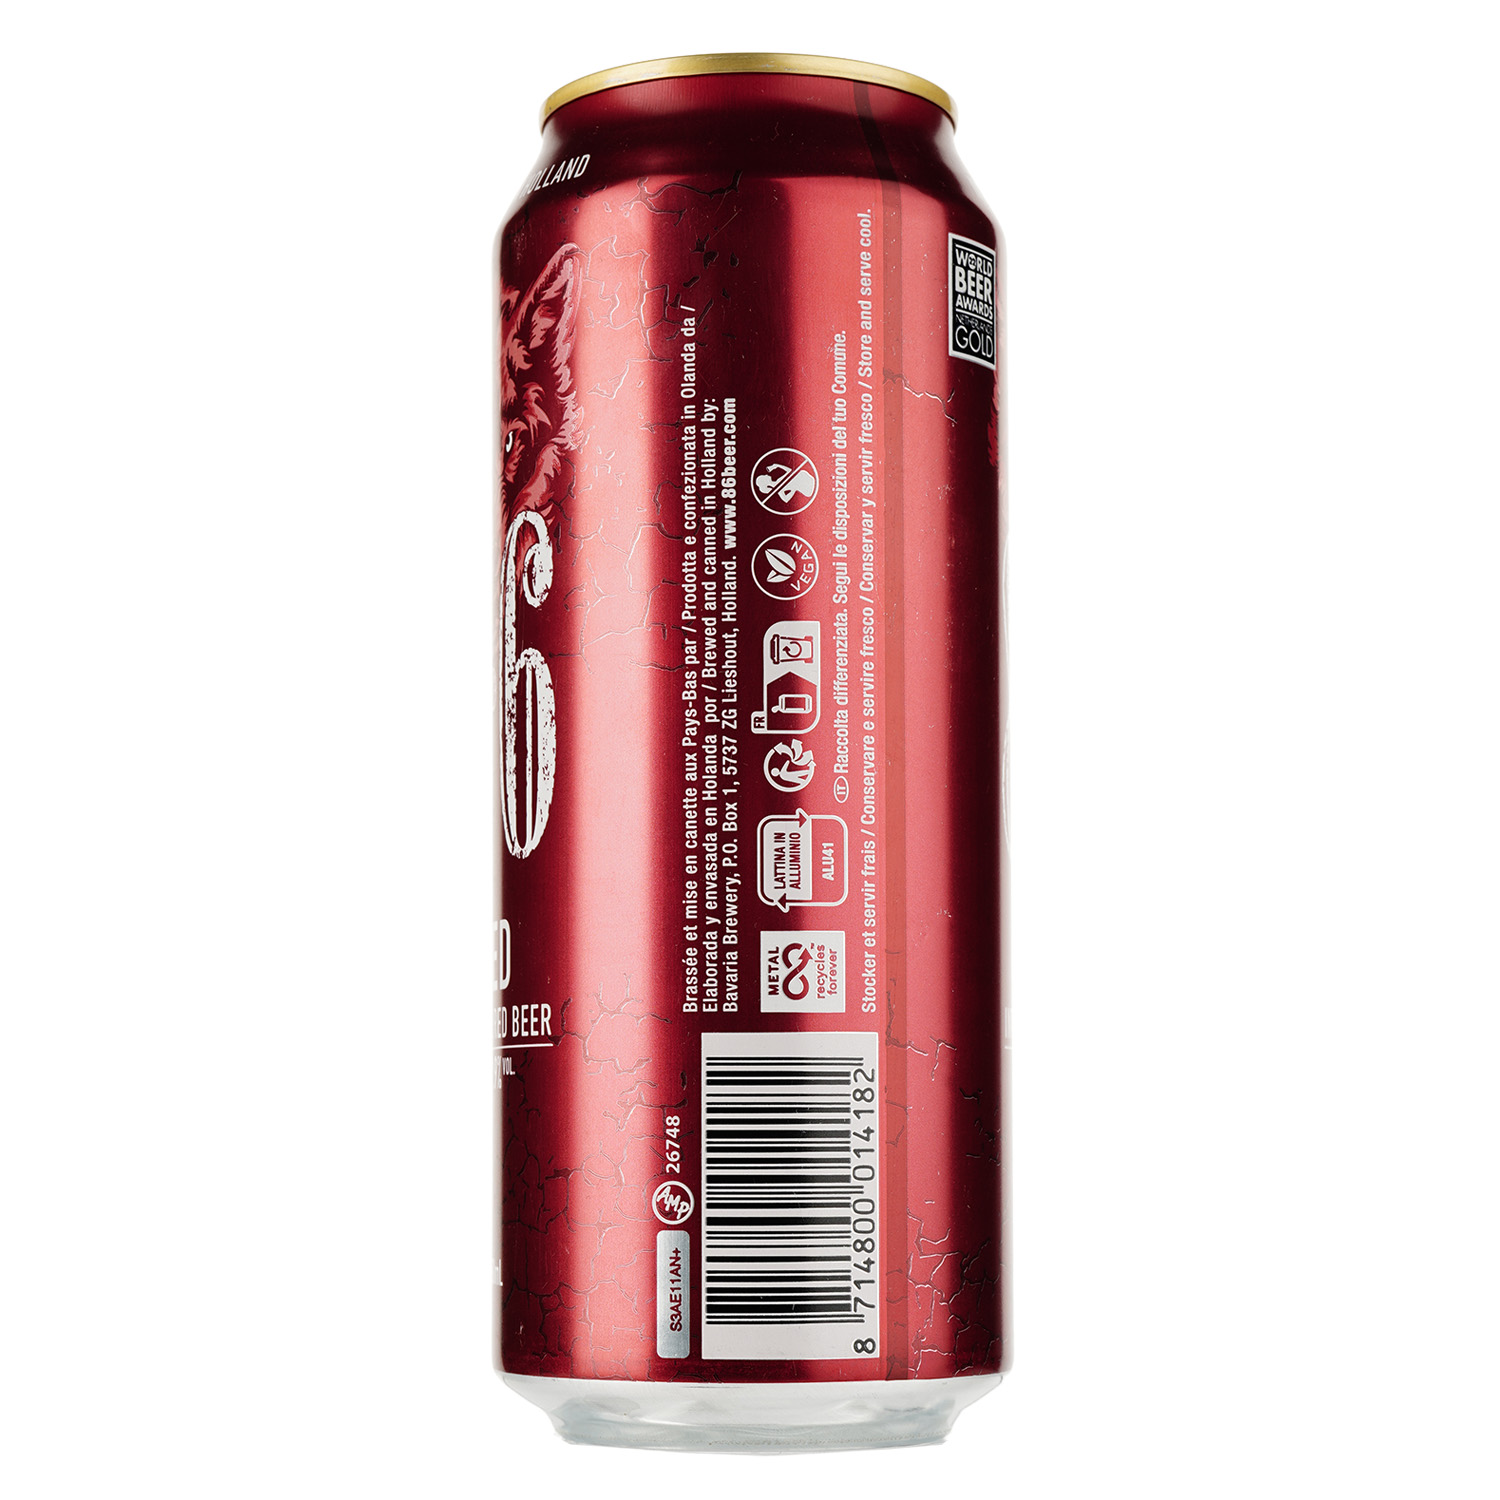 Пиво Bavaria 8.6, красное, фильтрованное, 7,9%, ж/б, 0,5 л - фото 2